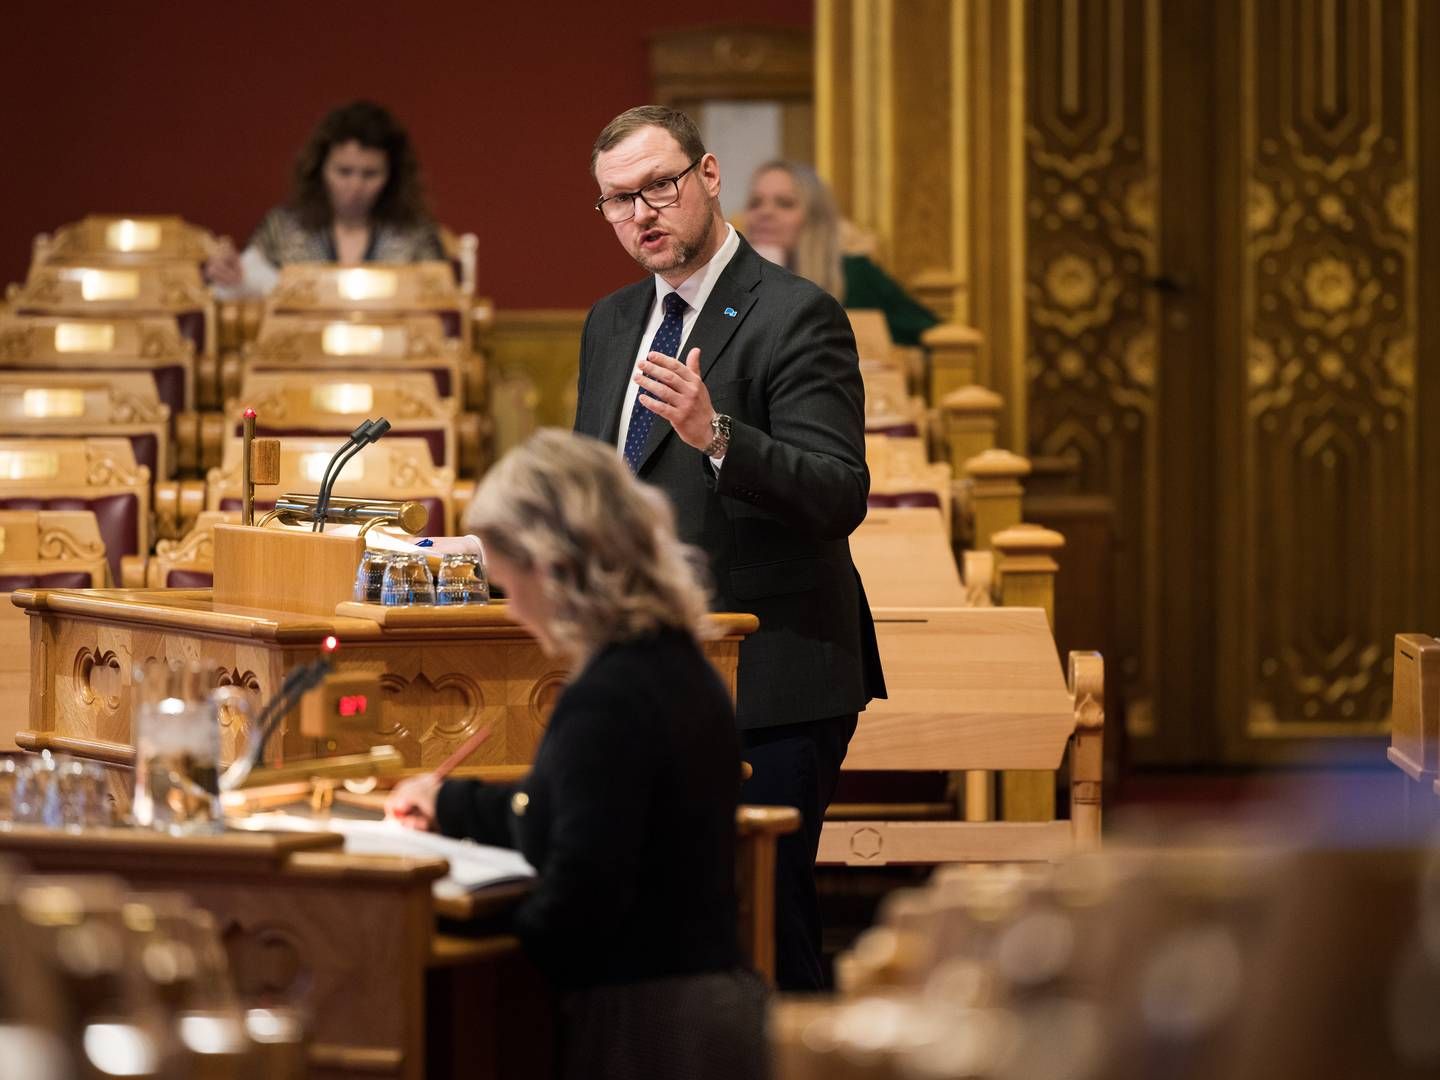 LAGRINGSPLASS: Både råvarer og flere legmidler bør lagres i de nasjonale beredskapslagrene, mener Erlend Svardal Bøe i Høyre. | Foto: Peter Mydske/Stortinget